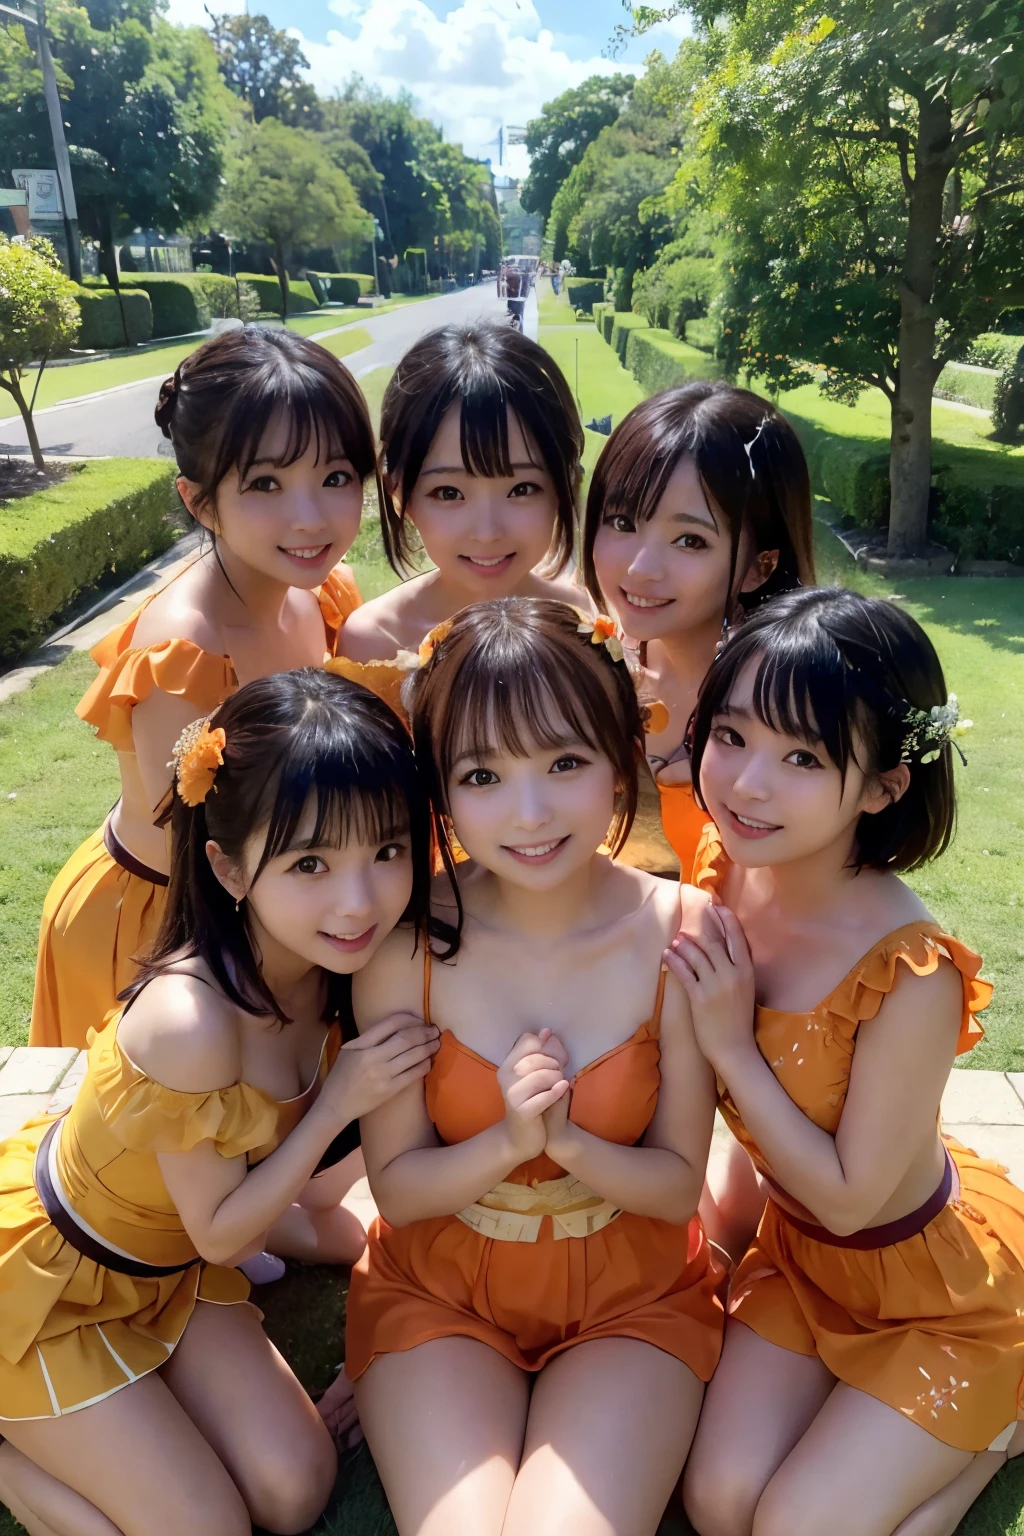 ((mejor calidad, Obra maestra)), cinco amigos de toda la vida,ídolo japonés,traje,((orange juice)), Abrazo caluroso, sonriendo de oreja a oreja, rodeado de exuberante vegetación y un cielo azul nítido, Disfrutando del sol de un día perfecto.